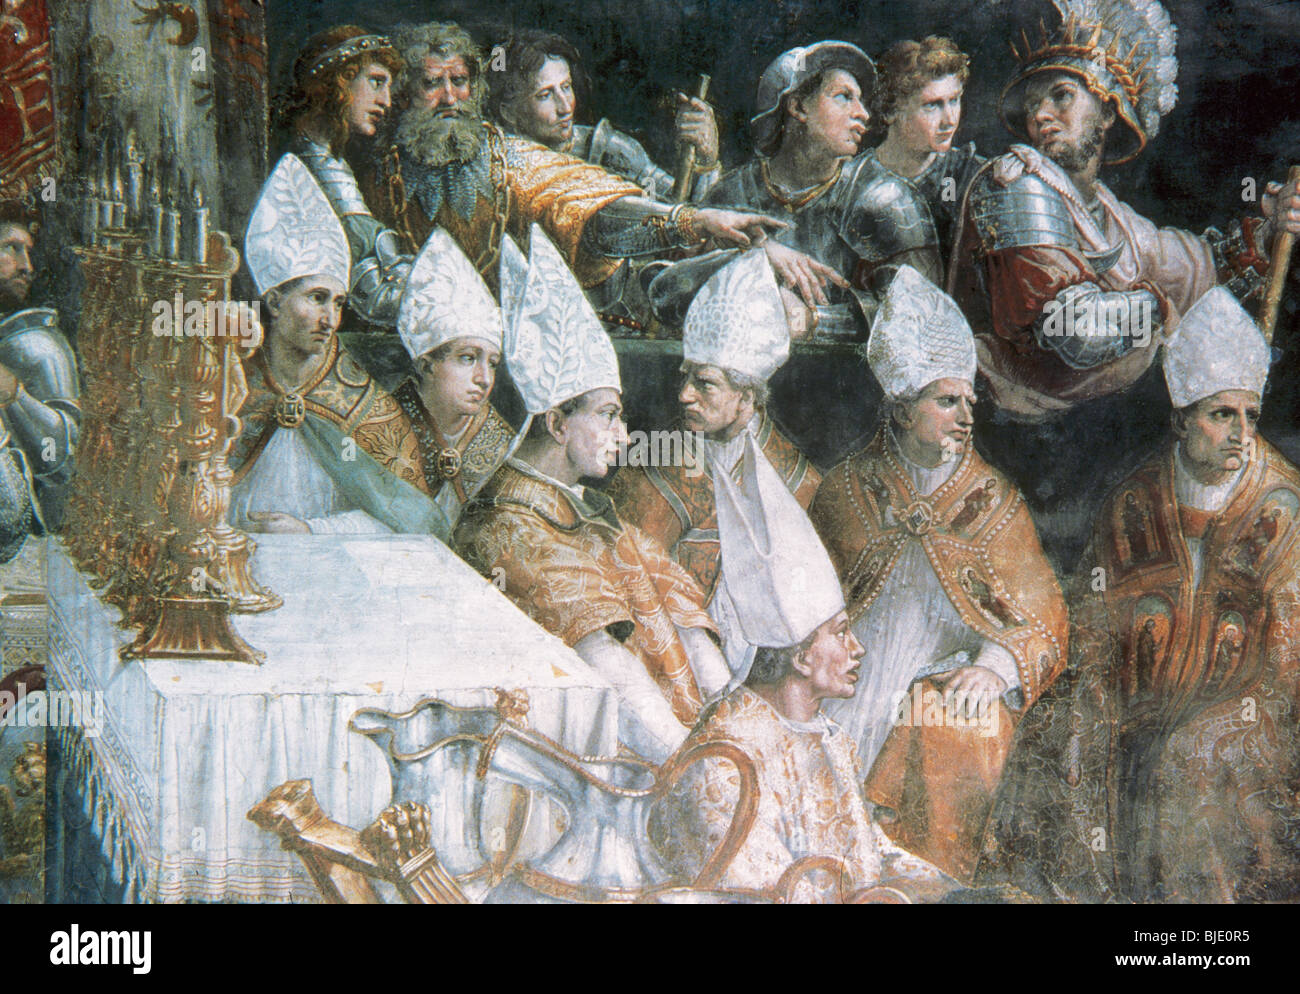 Raphaël, Raffaello Sanzio ou Santi, appelé (Urbino, 1483-Rome, 1520). Peintre italien. Couronnement de Charlemagne. La cité du Vatican. Banque D'Images